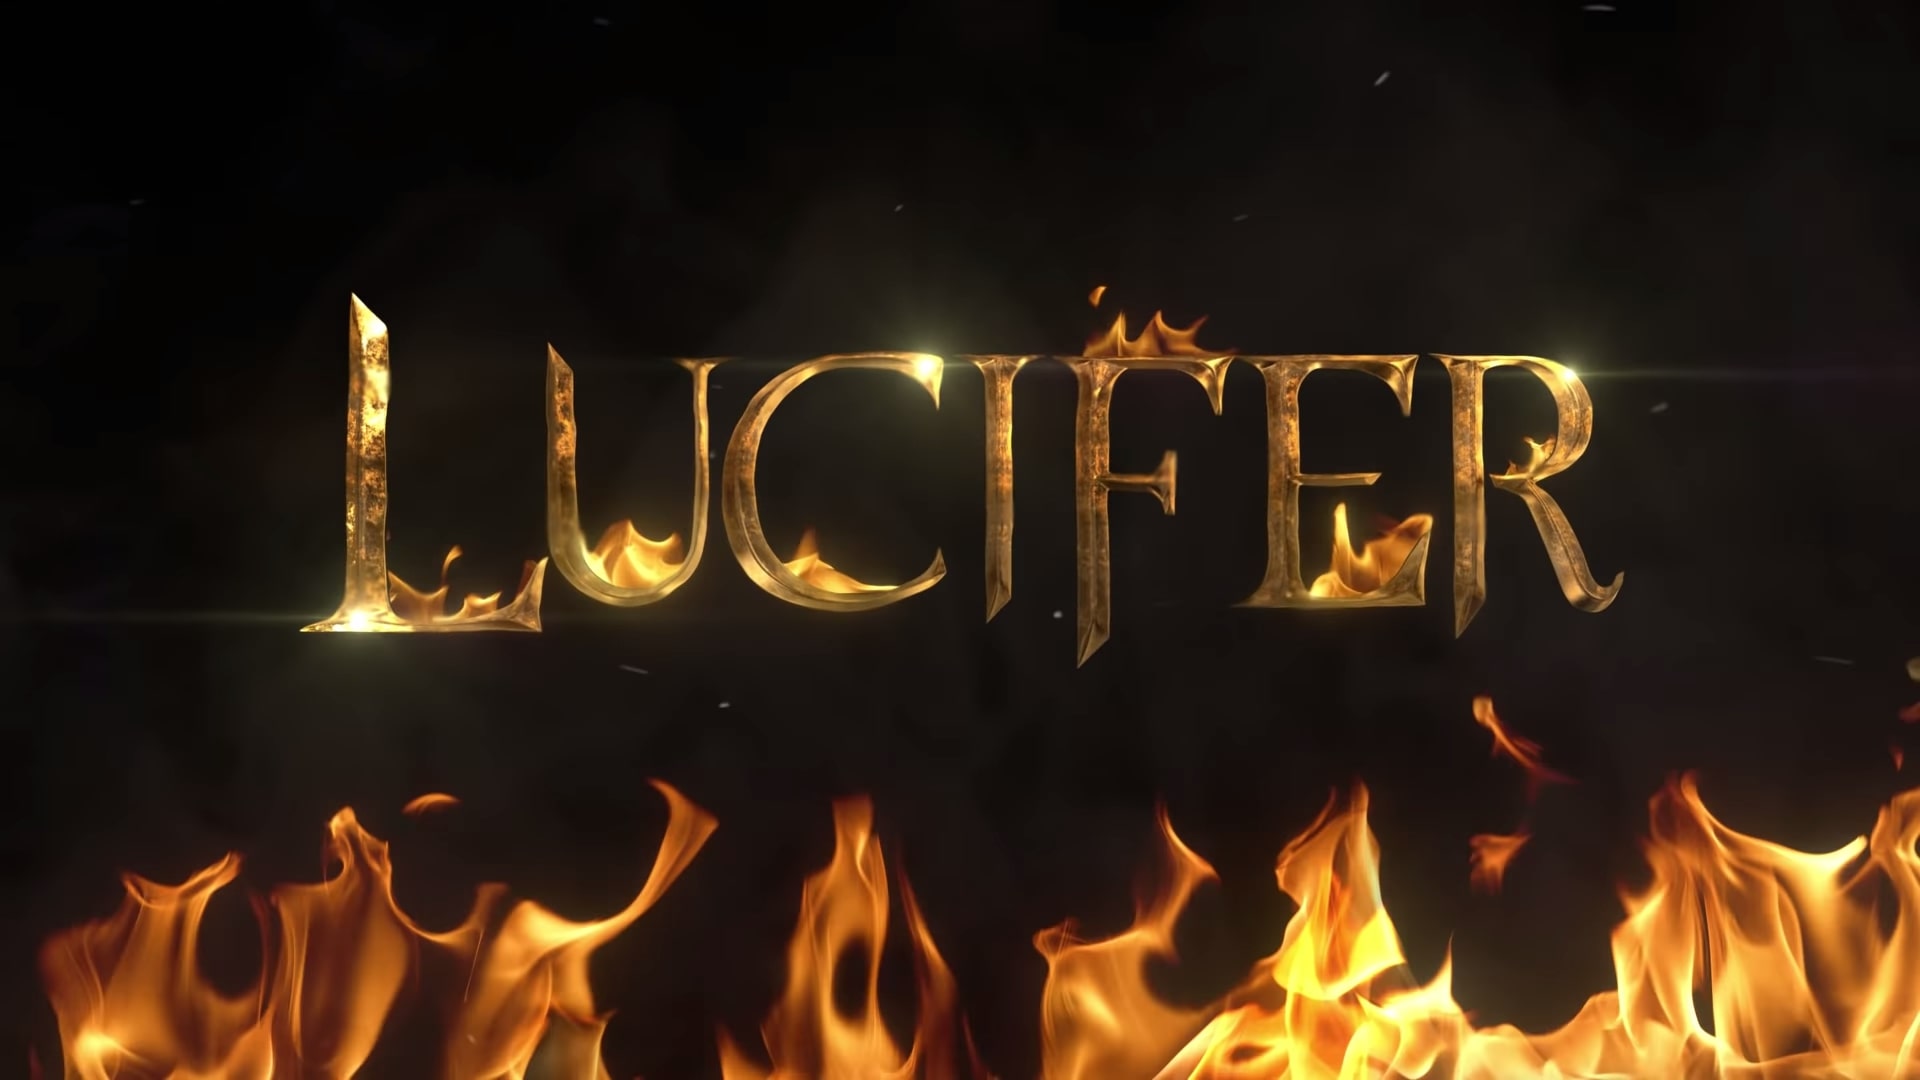 Netflix Lucifer Final Season Trailer, Coming to Netflix in September 2021